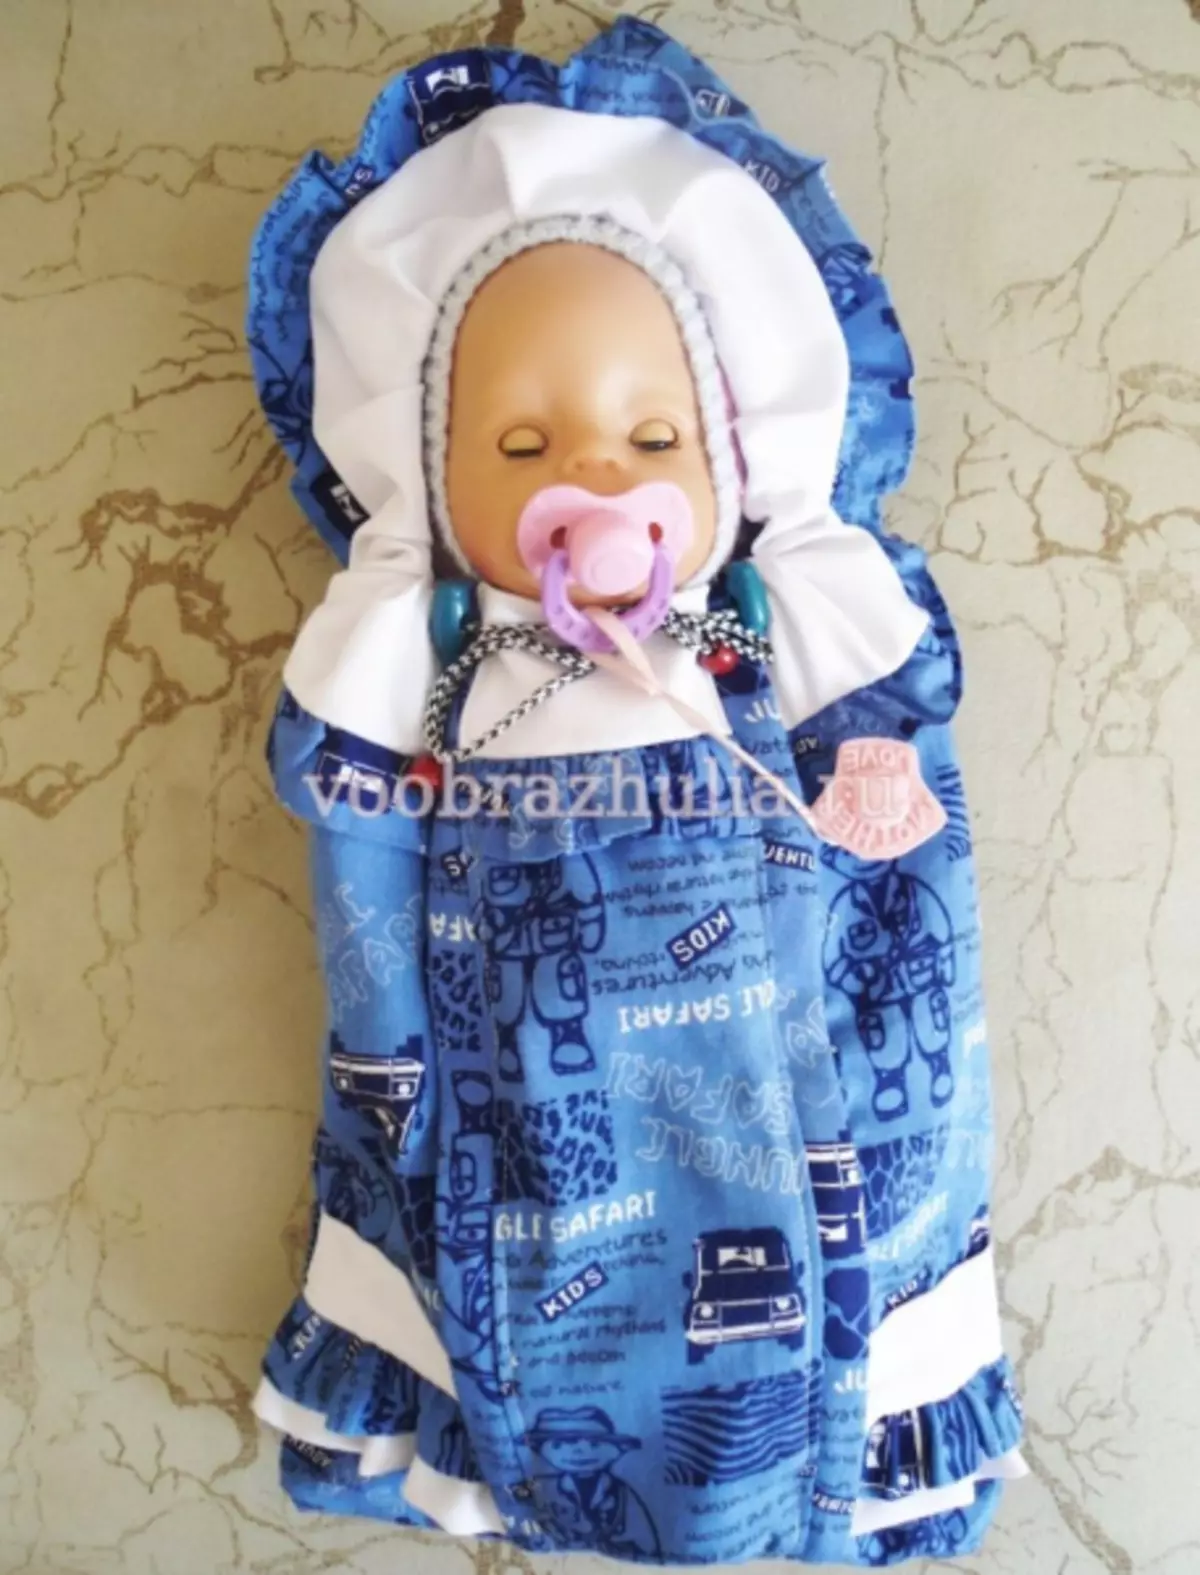 डल्फको लागि खामले यो गर्छन: बेबी बोनका लागि बान्की